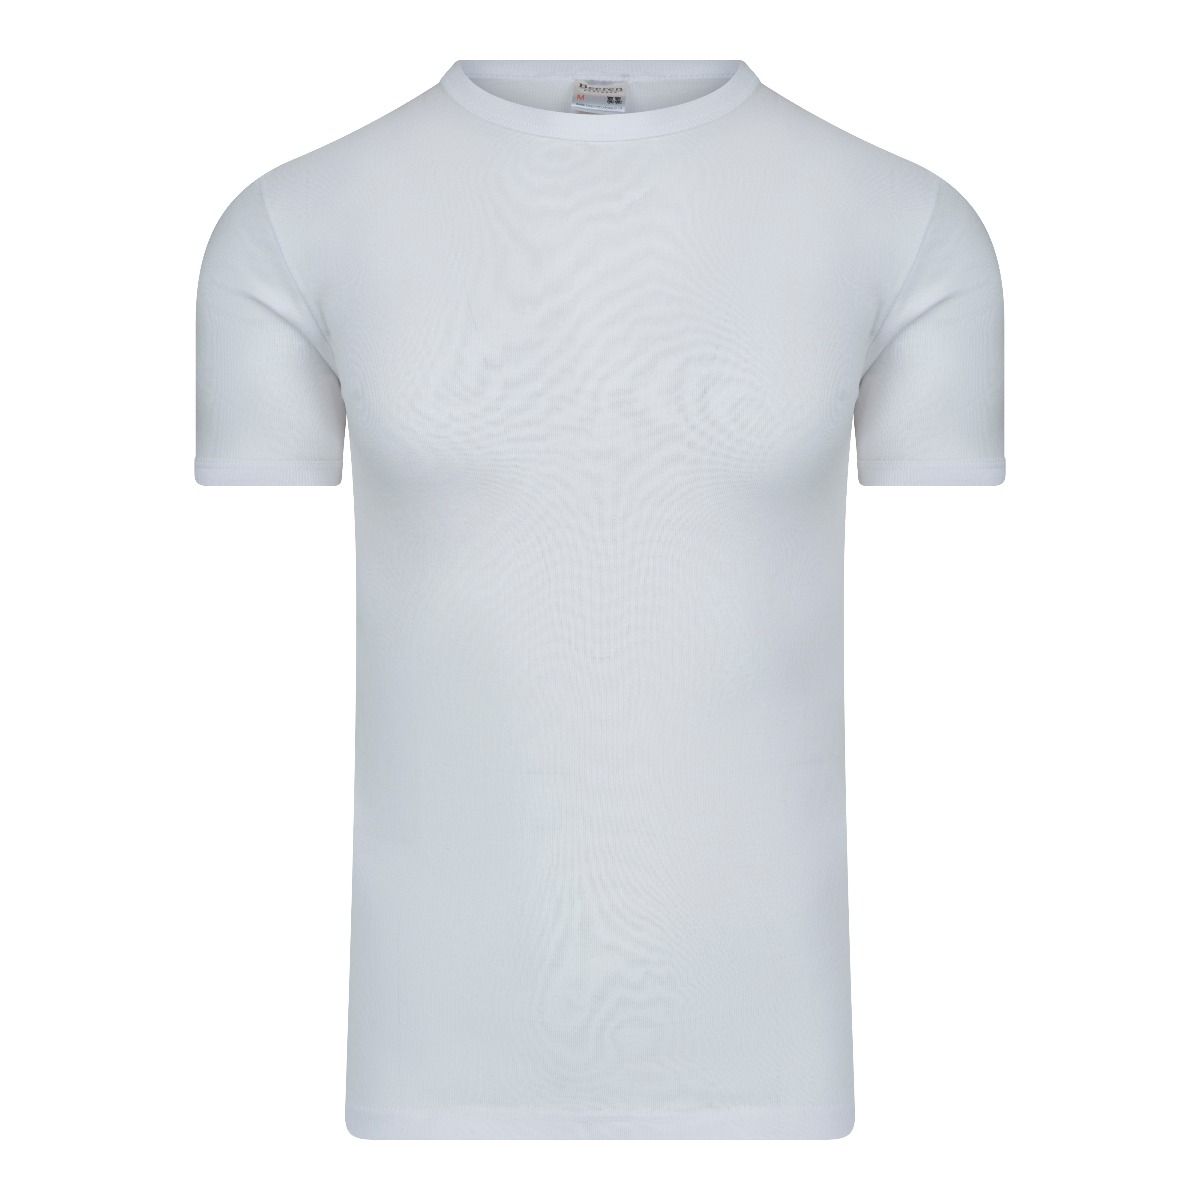 Voorbijganger Grafiek etiket Beeren T-Shirt wit m3000 basis T-Shirt van honderd procent katoen.